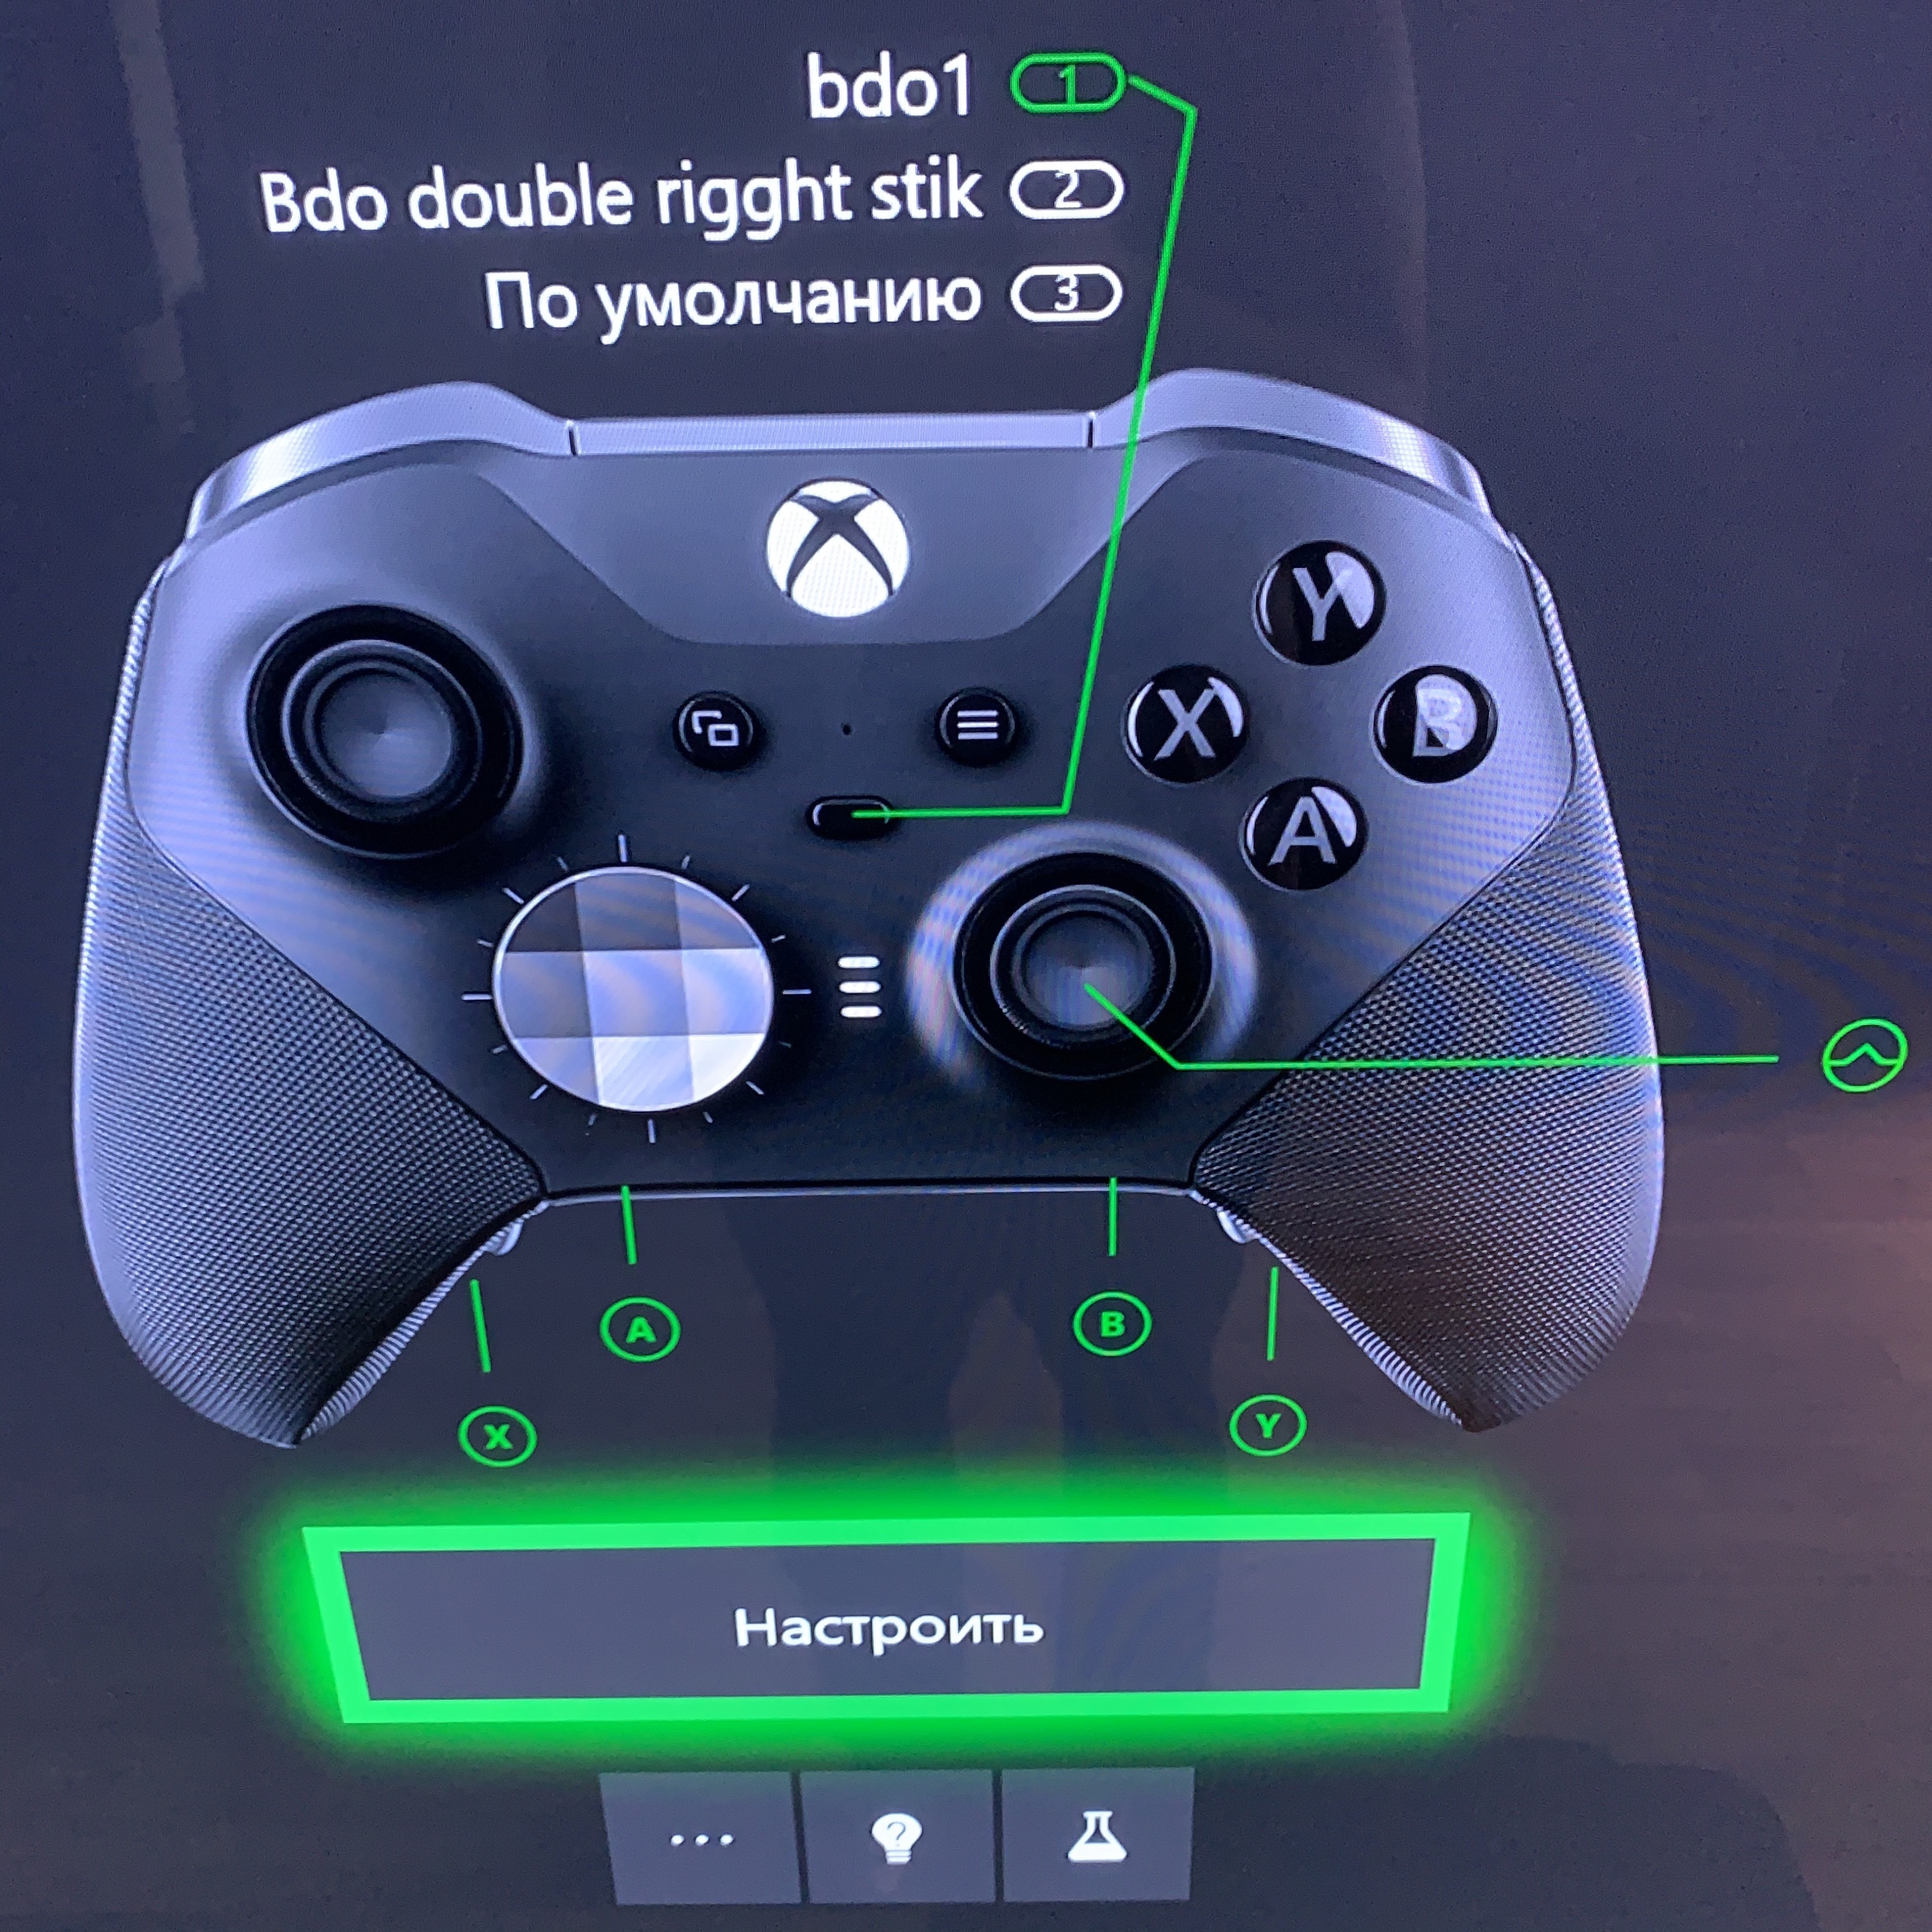 Как подключить джойстик от пс к пк. X360ce Dualshock 4. Xbox 360 подключить джойстик от ps4. Геймпад Xbox 360 и ps3. Как подключить джойстик Xbox 360.